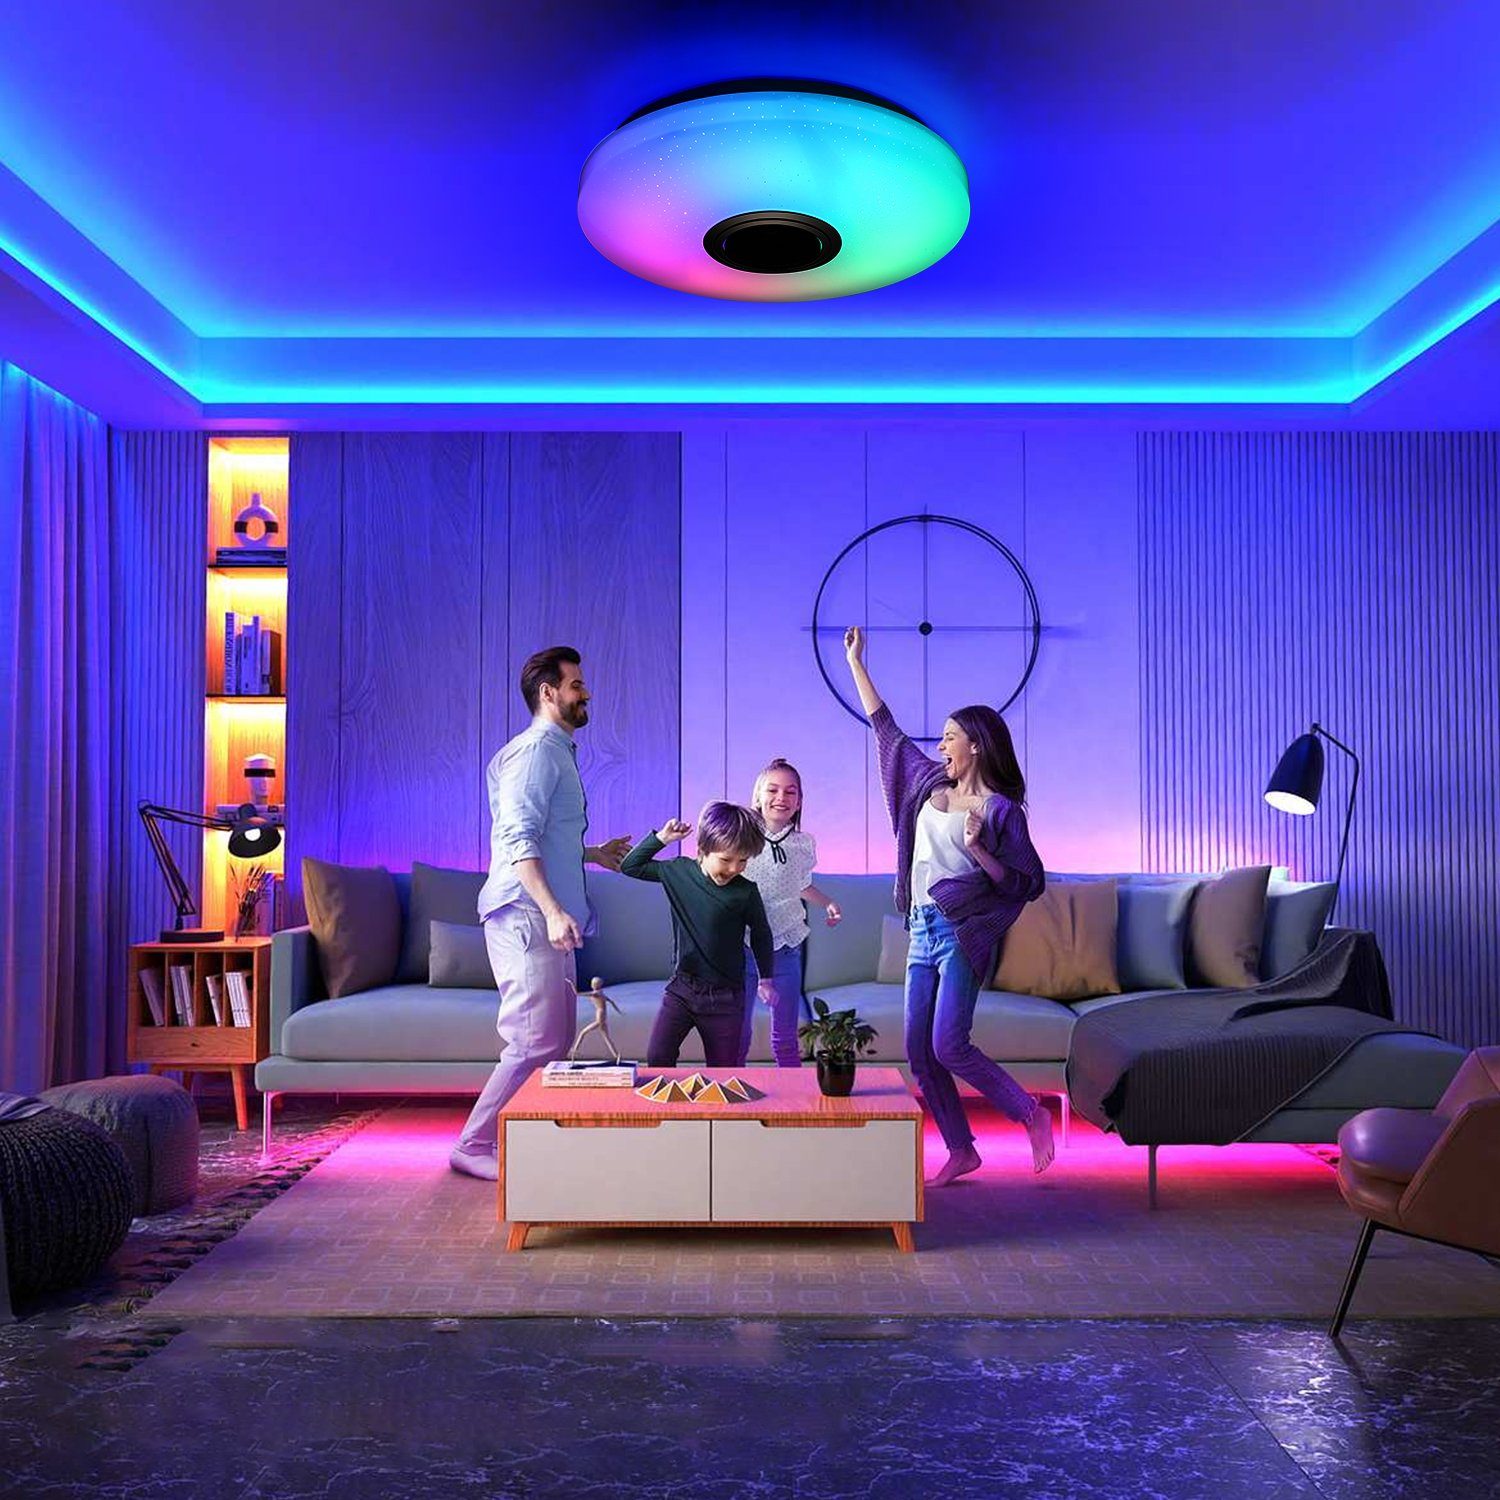 Dimmbar, Deckenlampe Wohnzimmer Sternenhimmel-Effekt, APP fest Fernbedienung Küche LED WiFi Deckenleuchte Flur iscooter mit Badleuchte integriert, Smart RGB Lampe